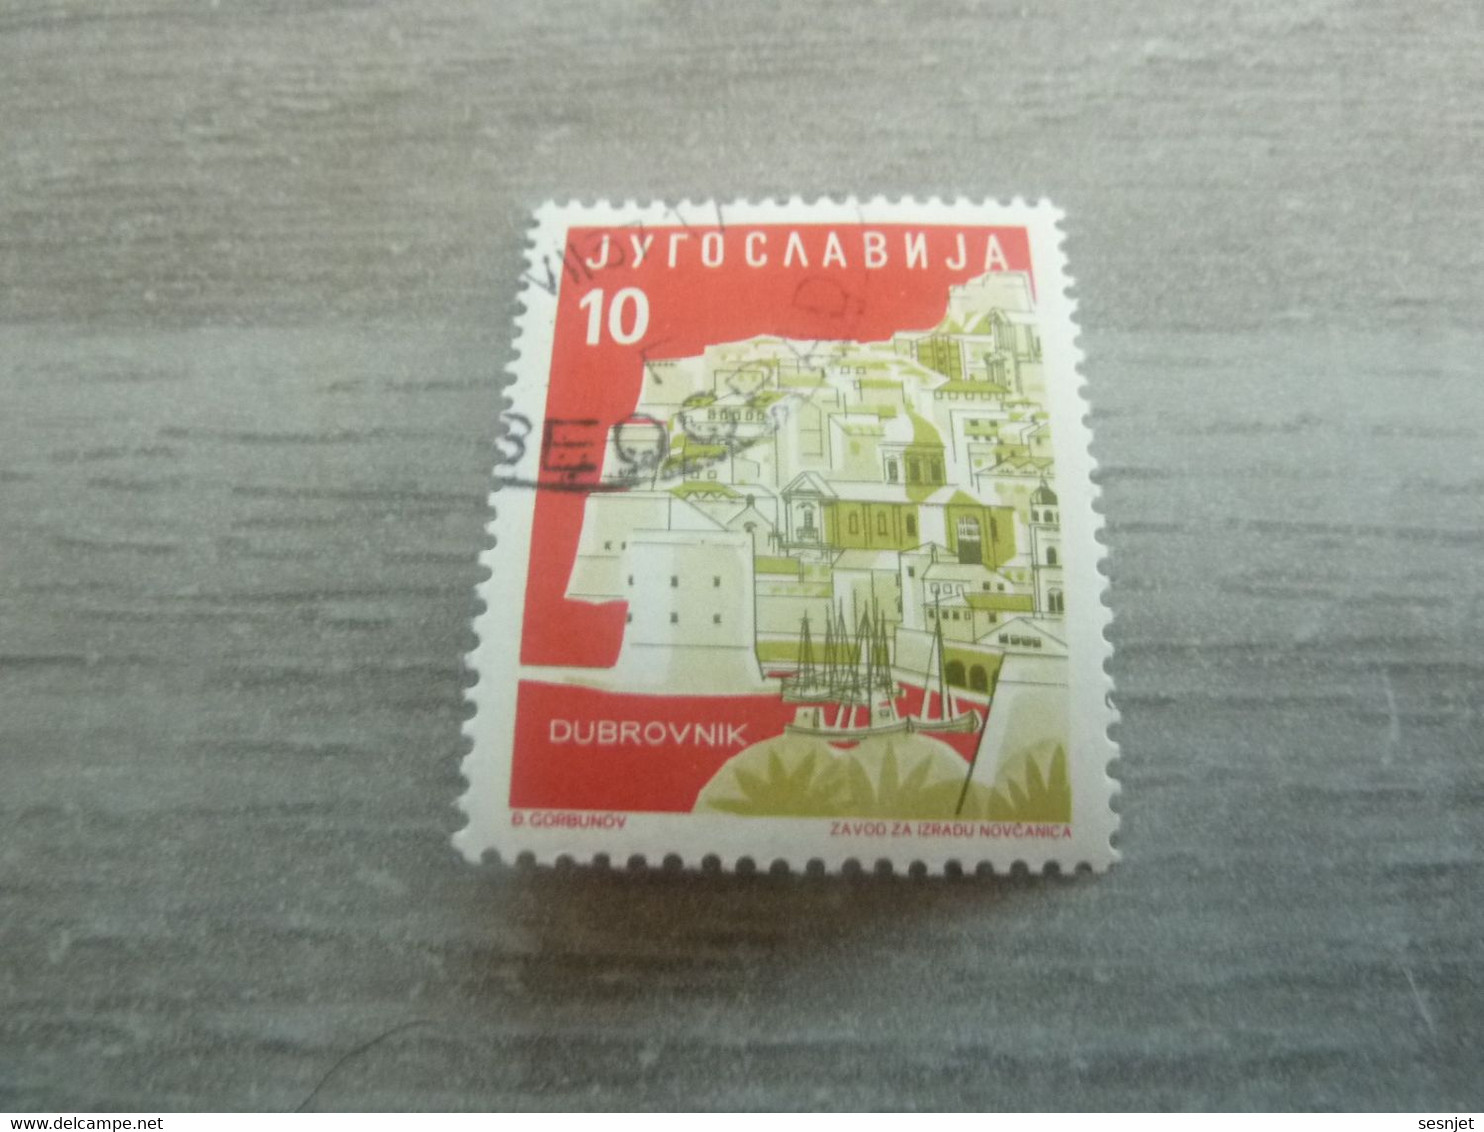 Jyrocaabnja - Dubrovnik - Val 10 - Multicolore - Oblitéré - - Usados